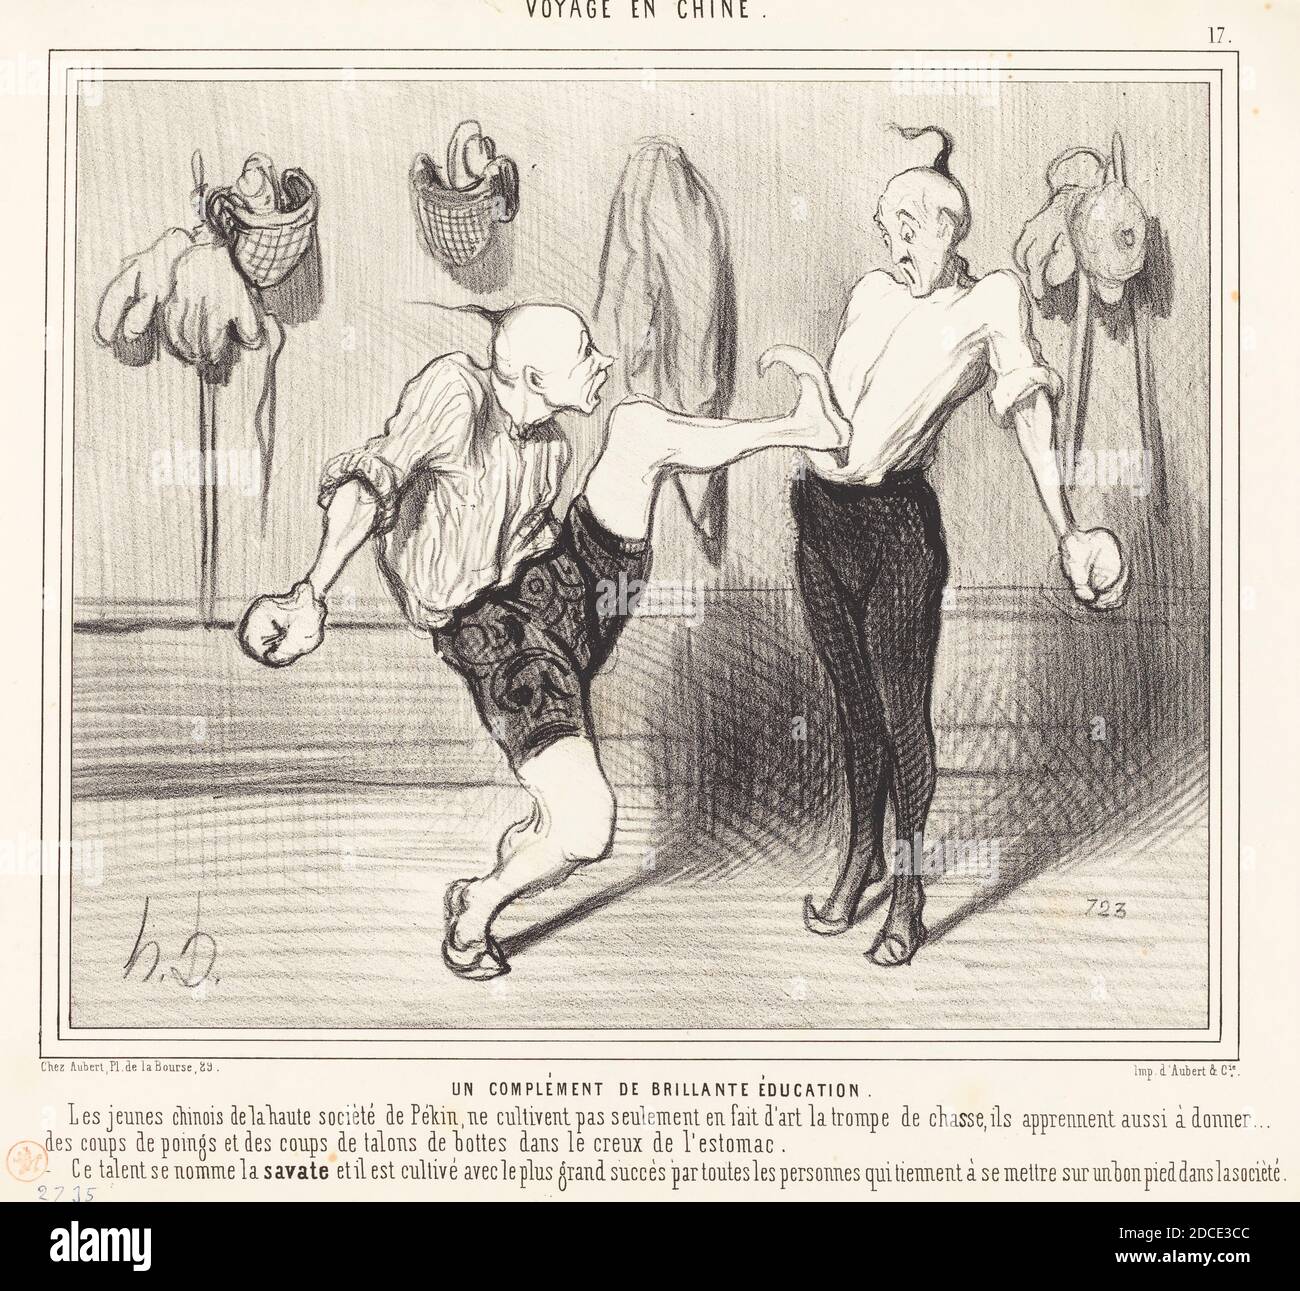 Honoré Daumier, (artist), French, 1808 - 1879, Un Complément de brillante éducation, Voyage en Chine: pl.17, (series), 1844/1845, lithograph Stock Photo